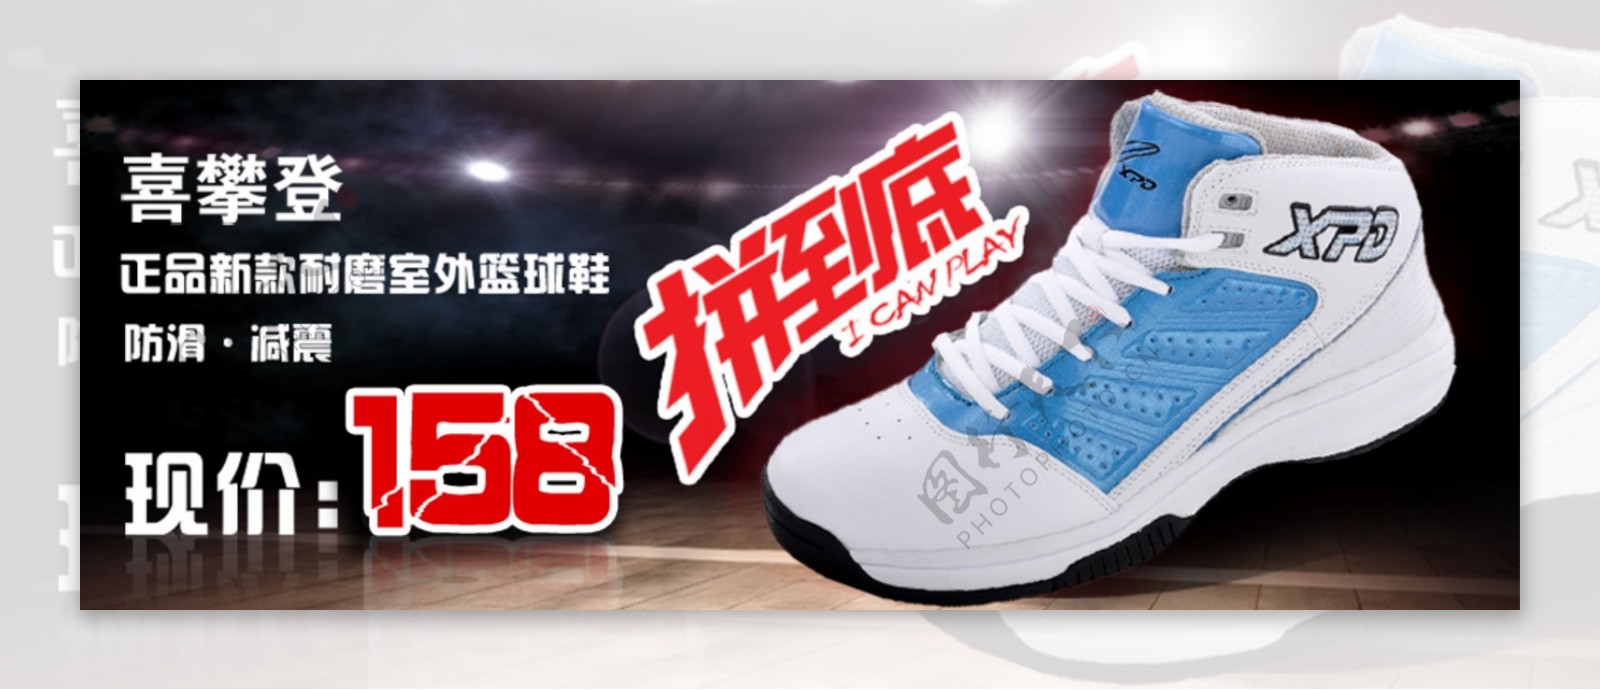 淘宝时尚运动篮球鞋海报